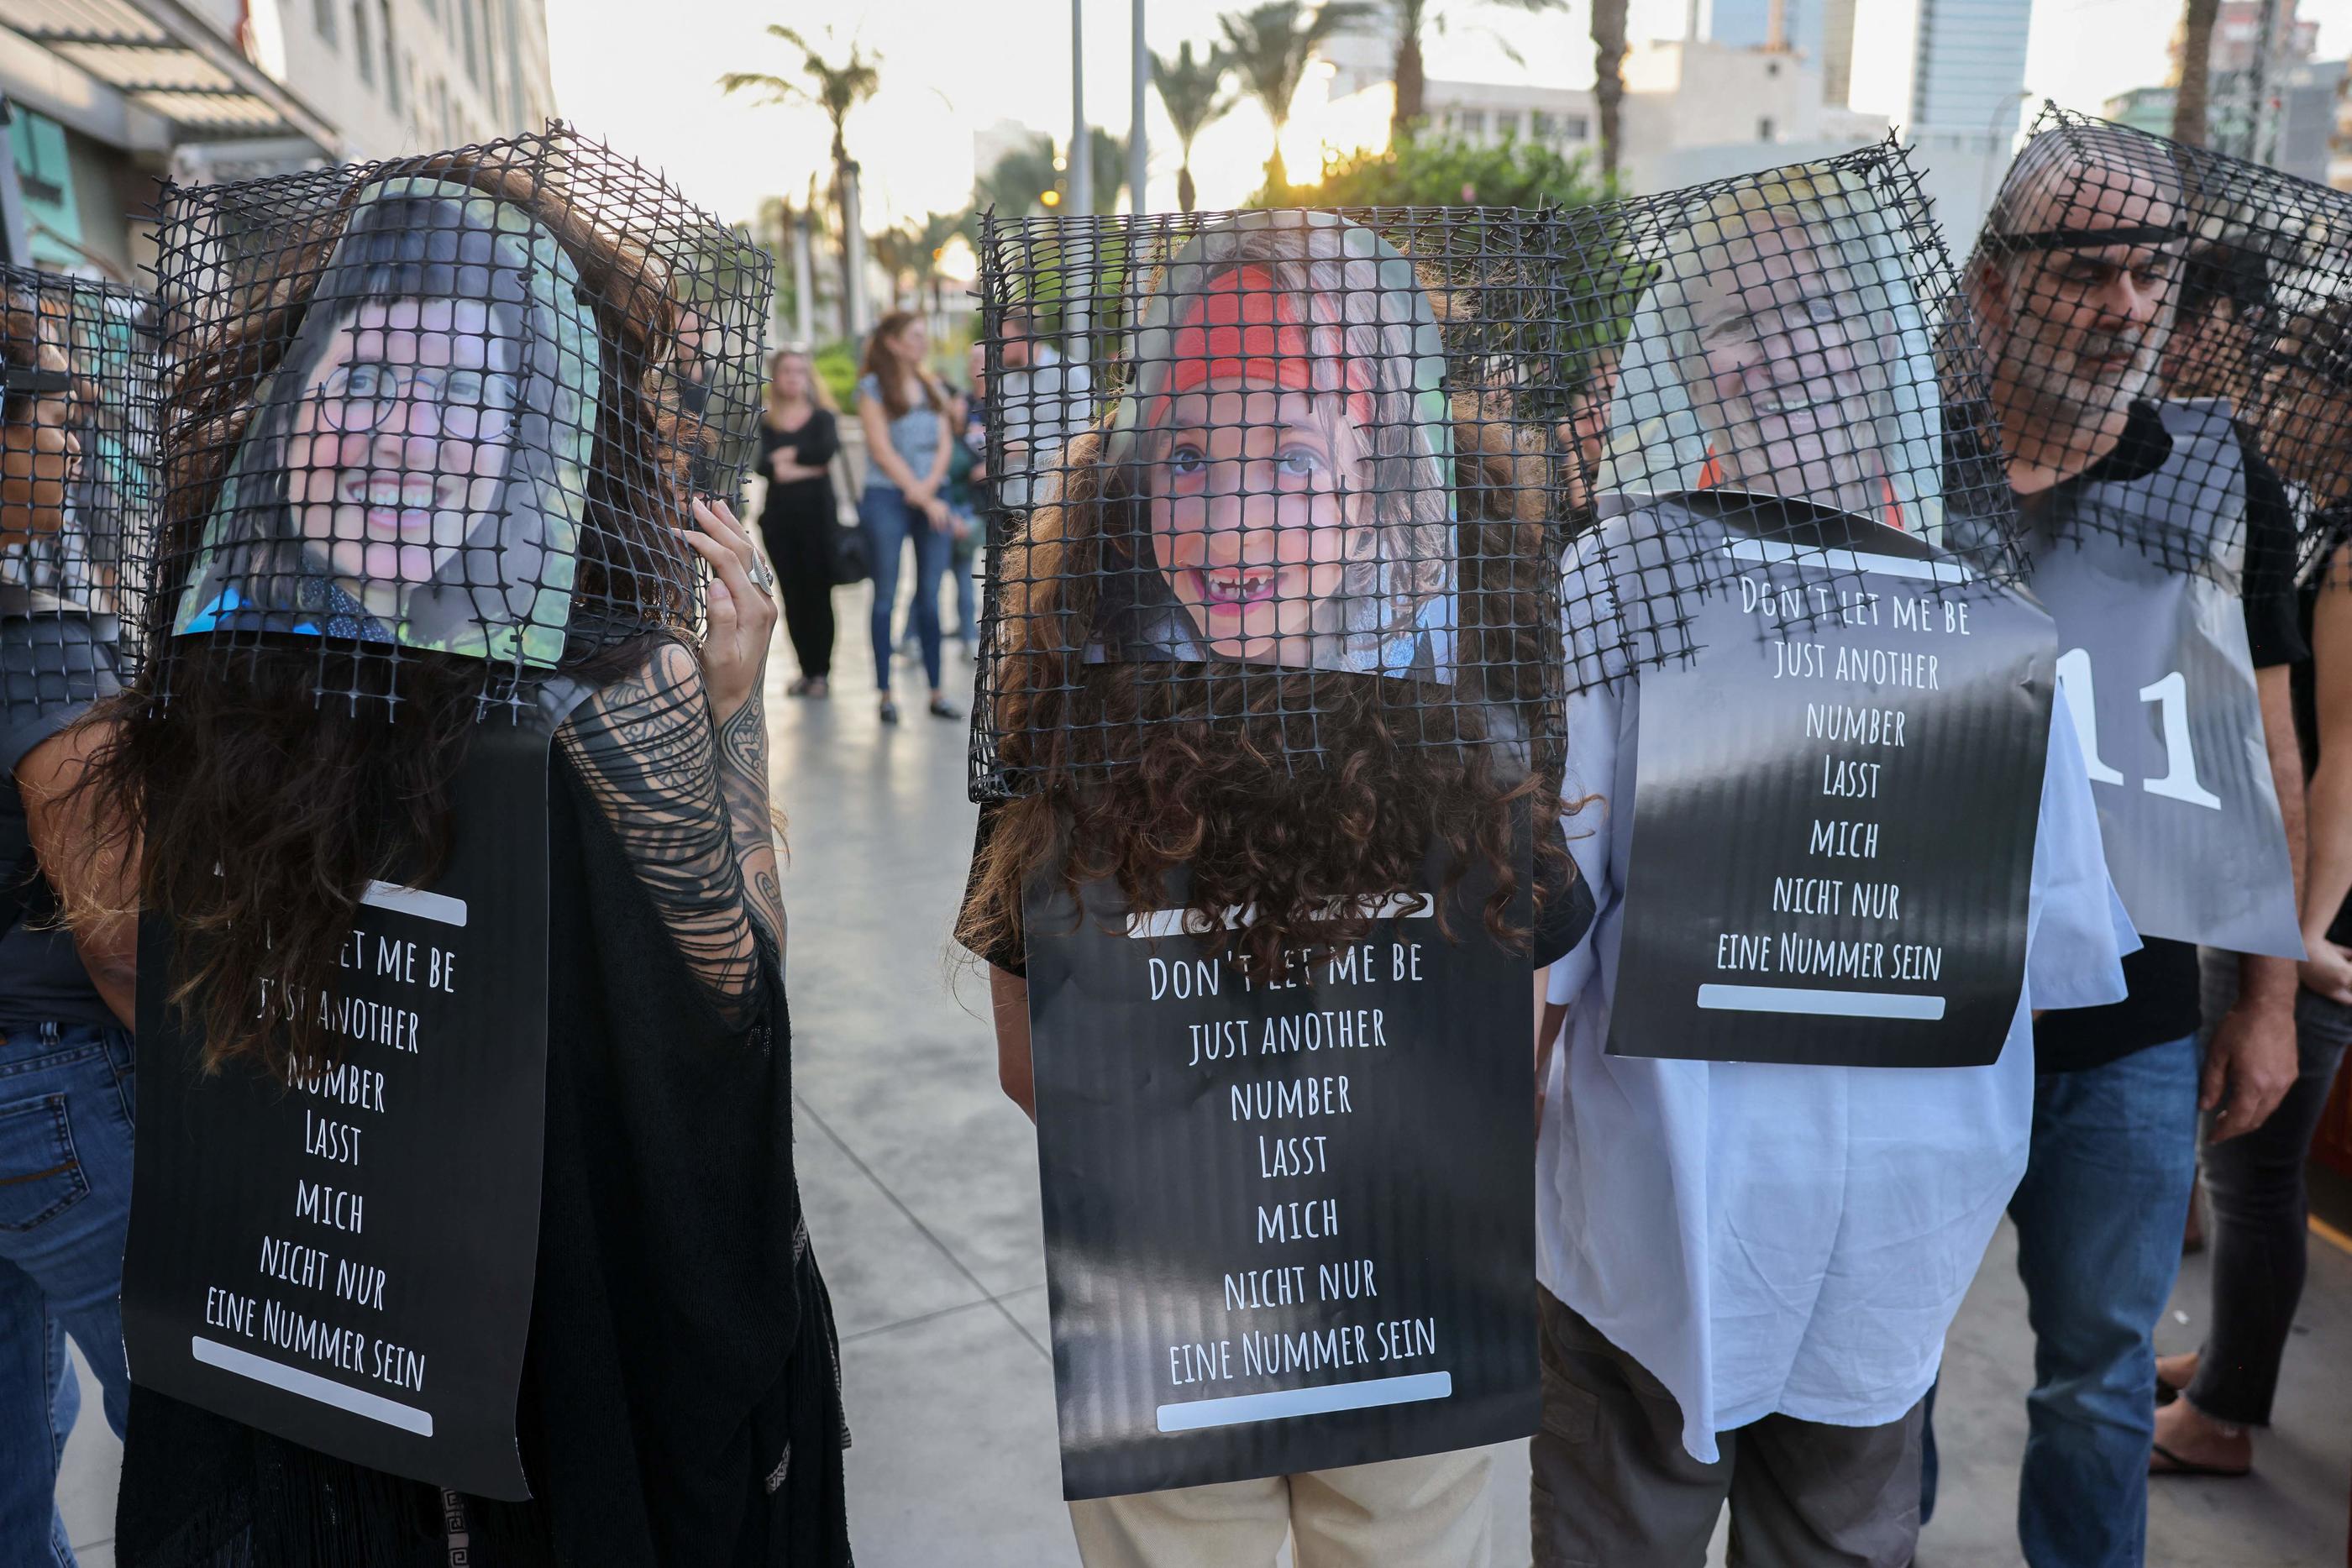 À Tel-Aviv, les visages des otages sont partout. Affiches, tee-shirts, banderoles sont la seule manière pour la population civile de leur apporter du soutien. AFP/Ahmad Gharabli